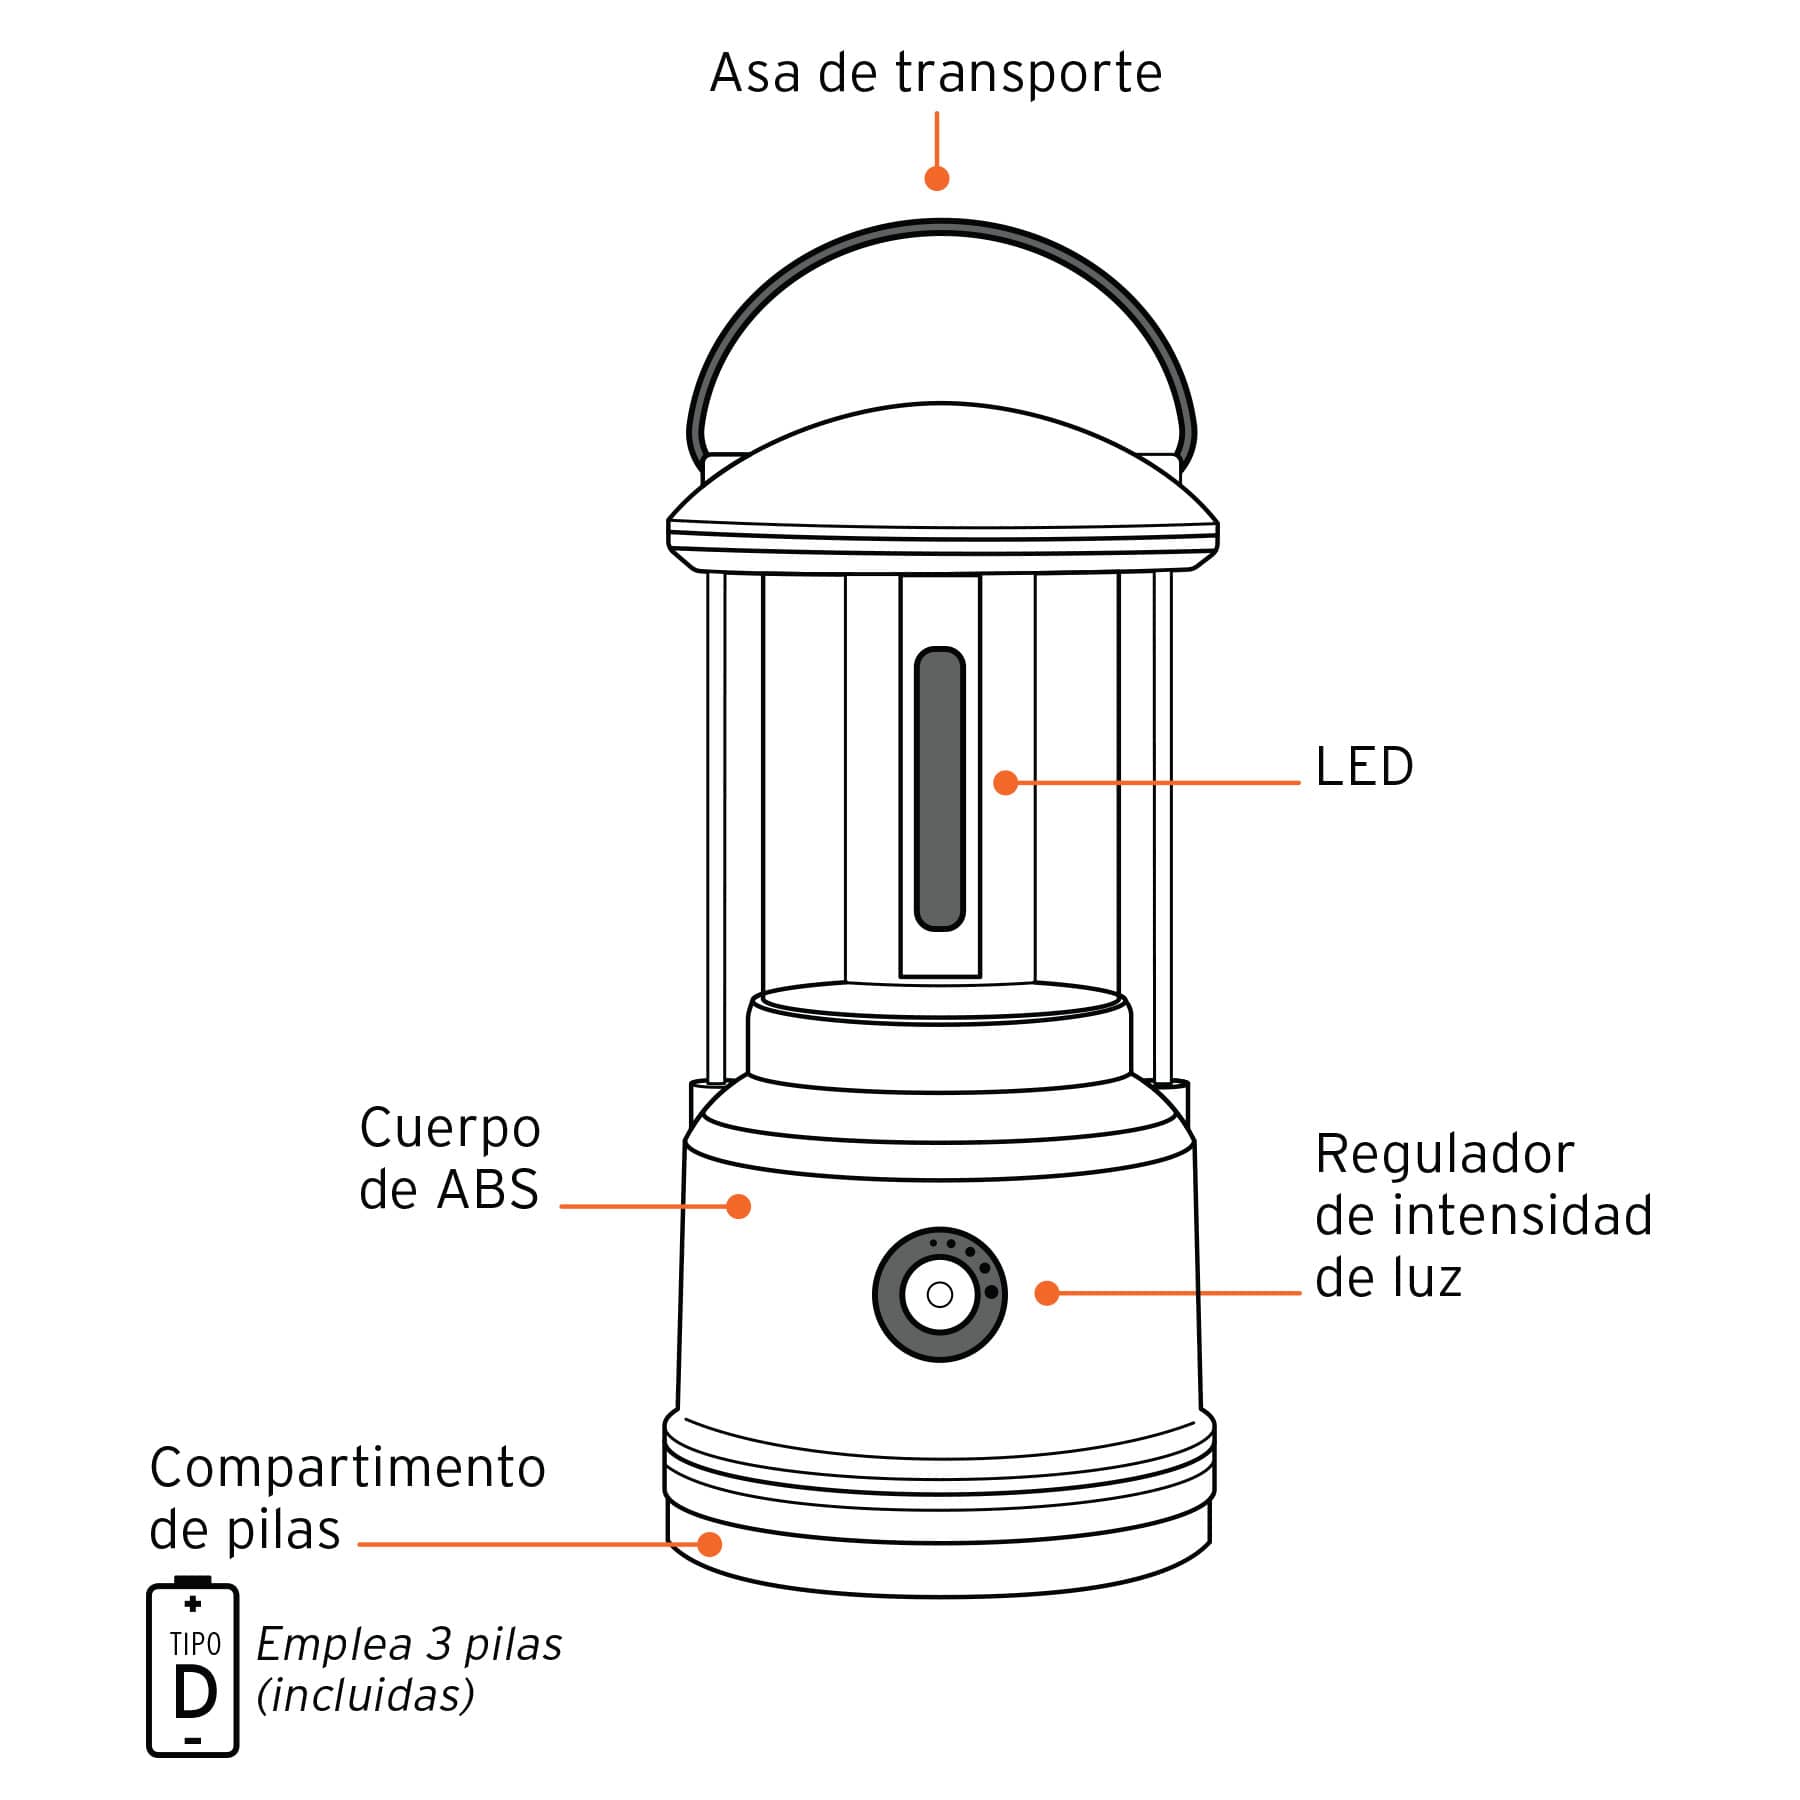 Linterna de LED para Campamento - Truper